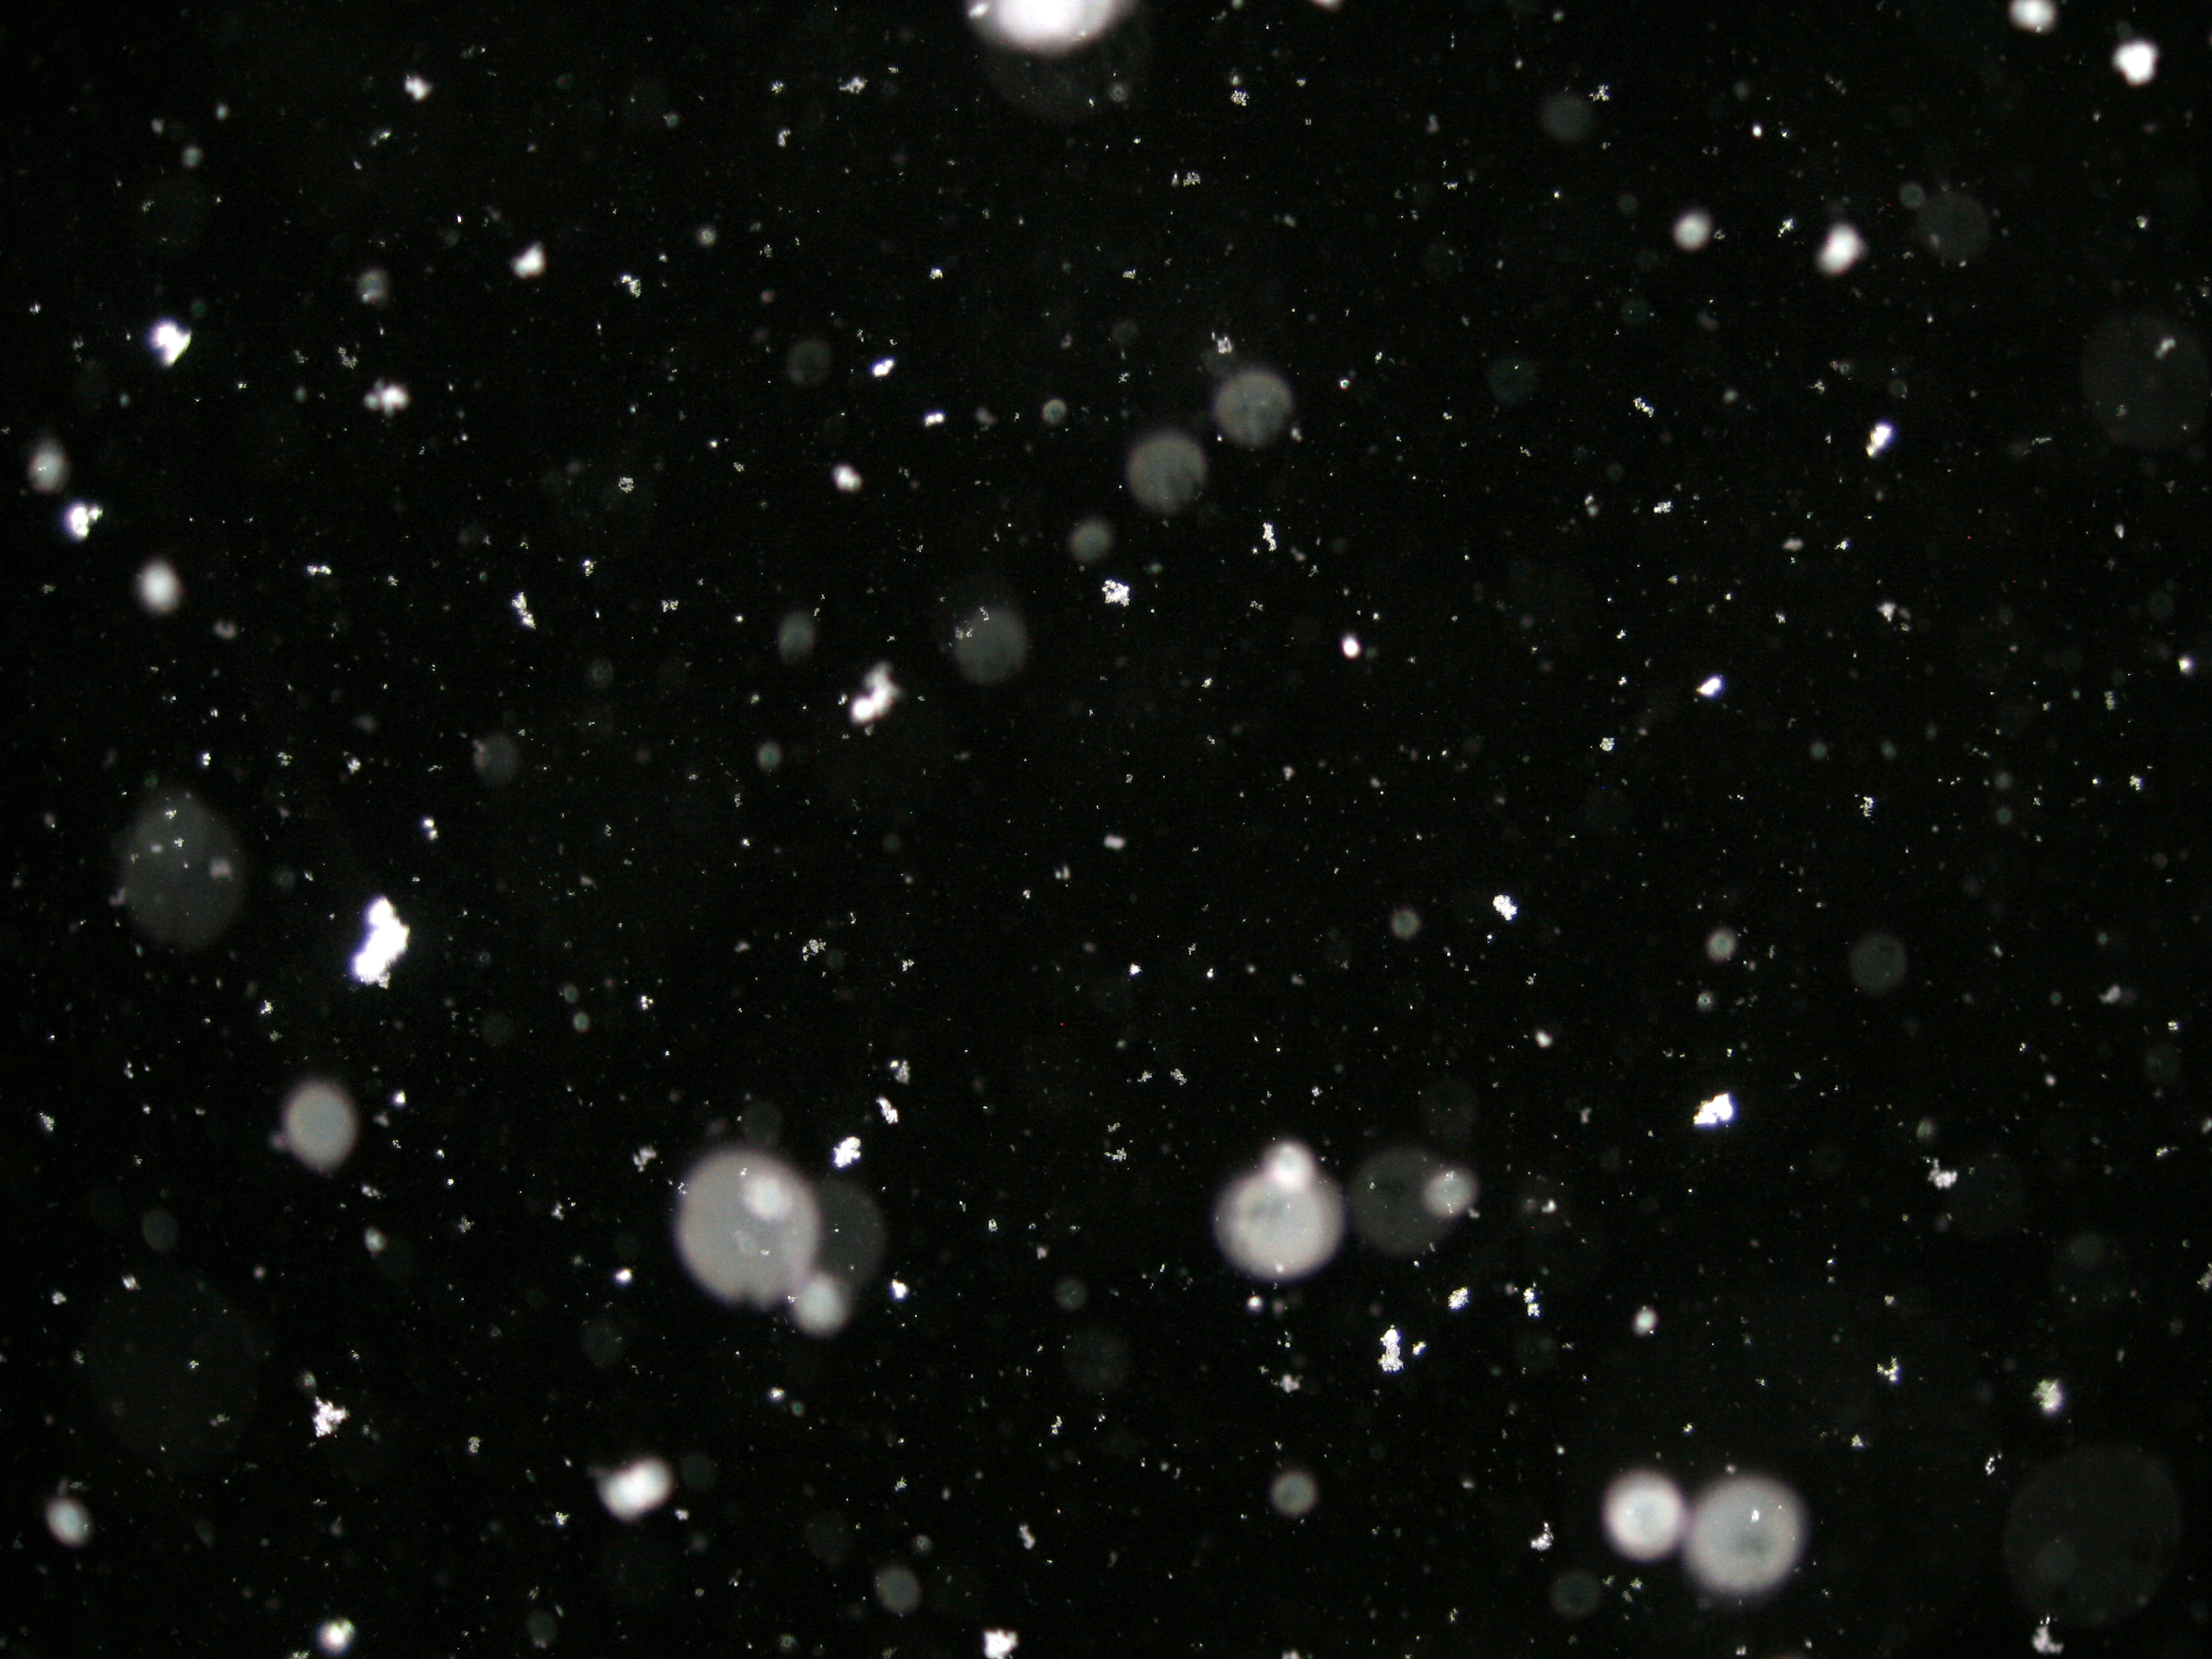 Снег пнг картинка